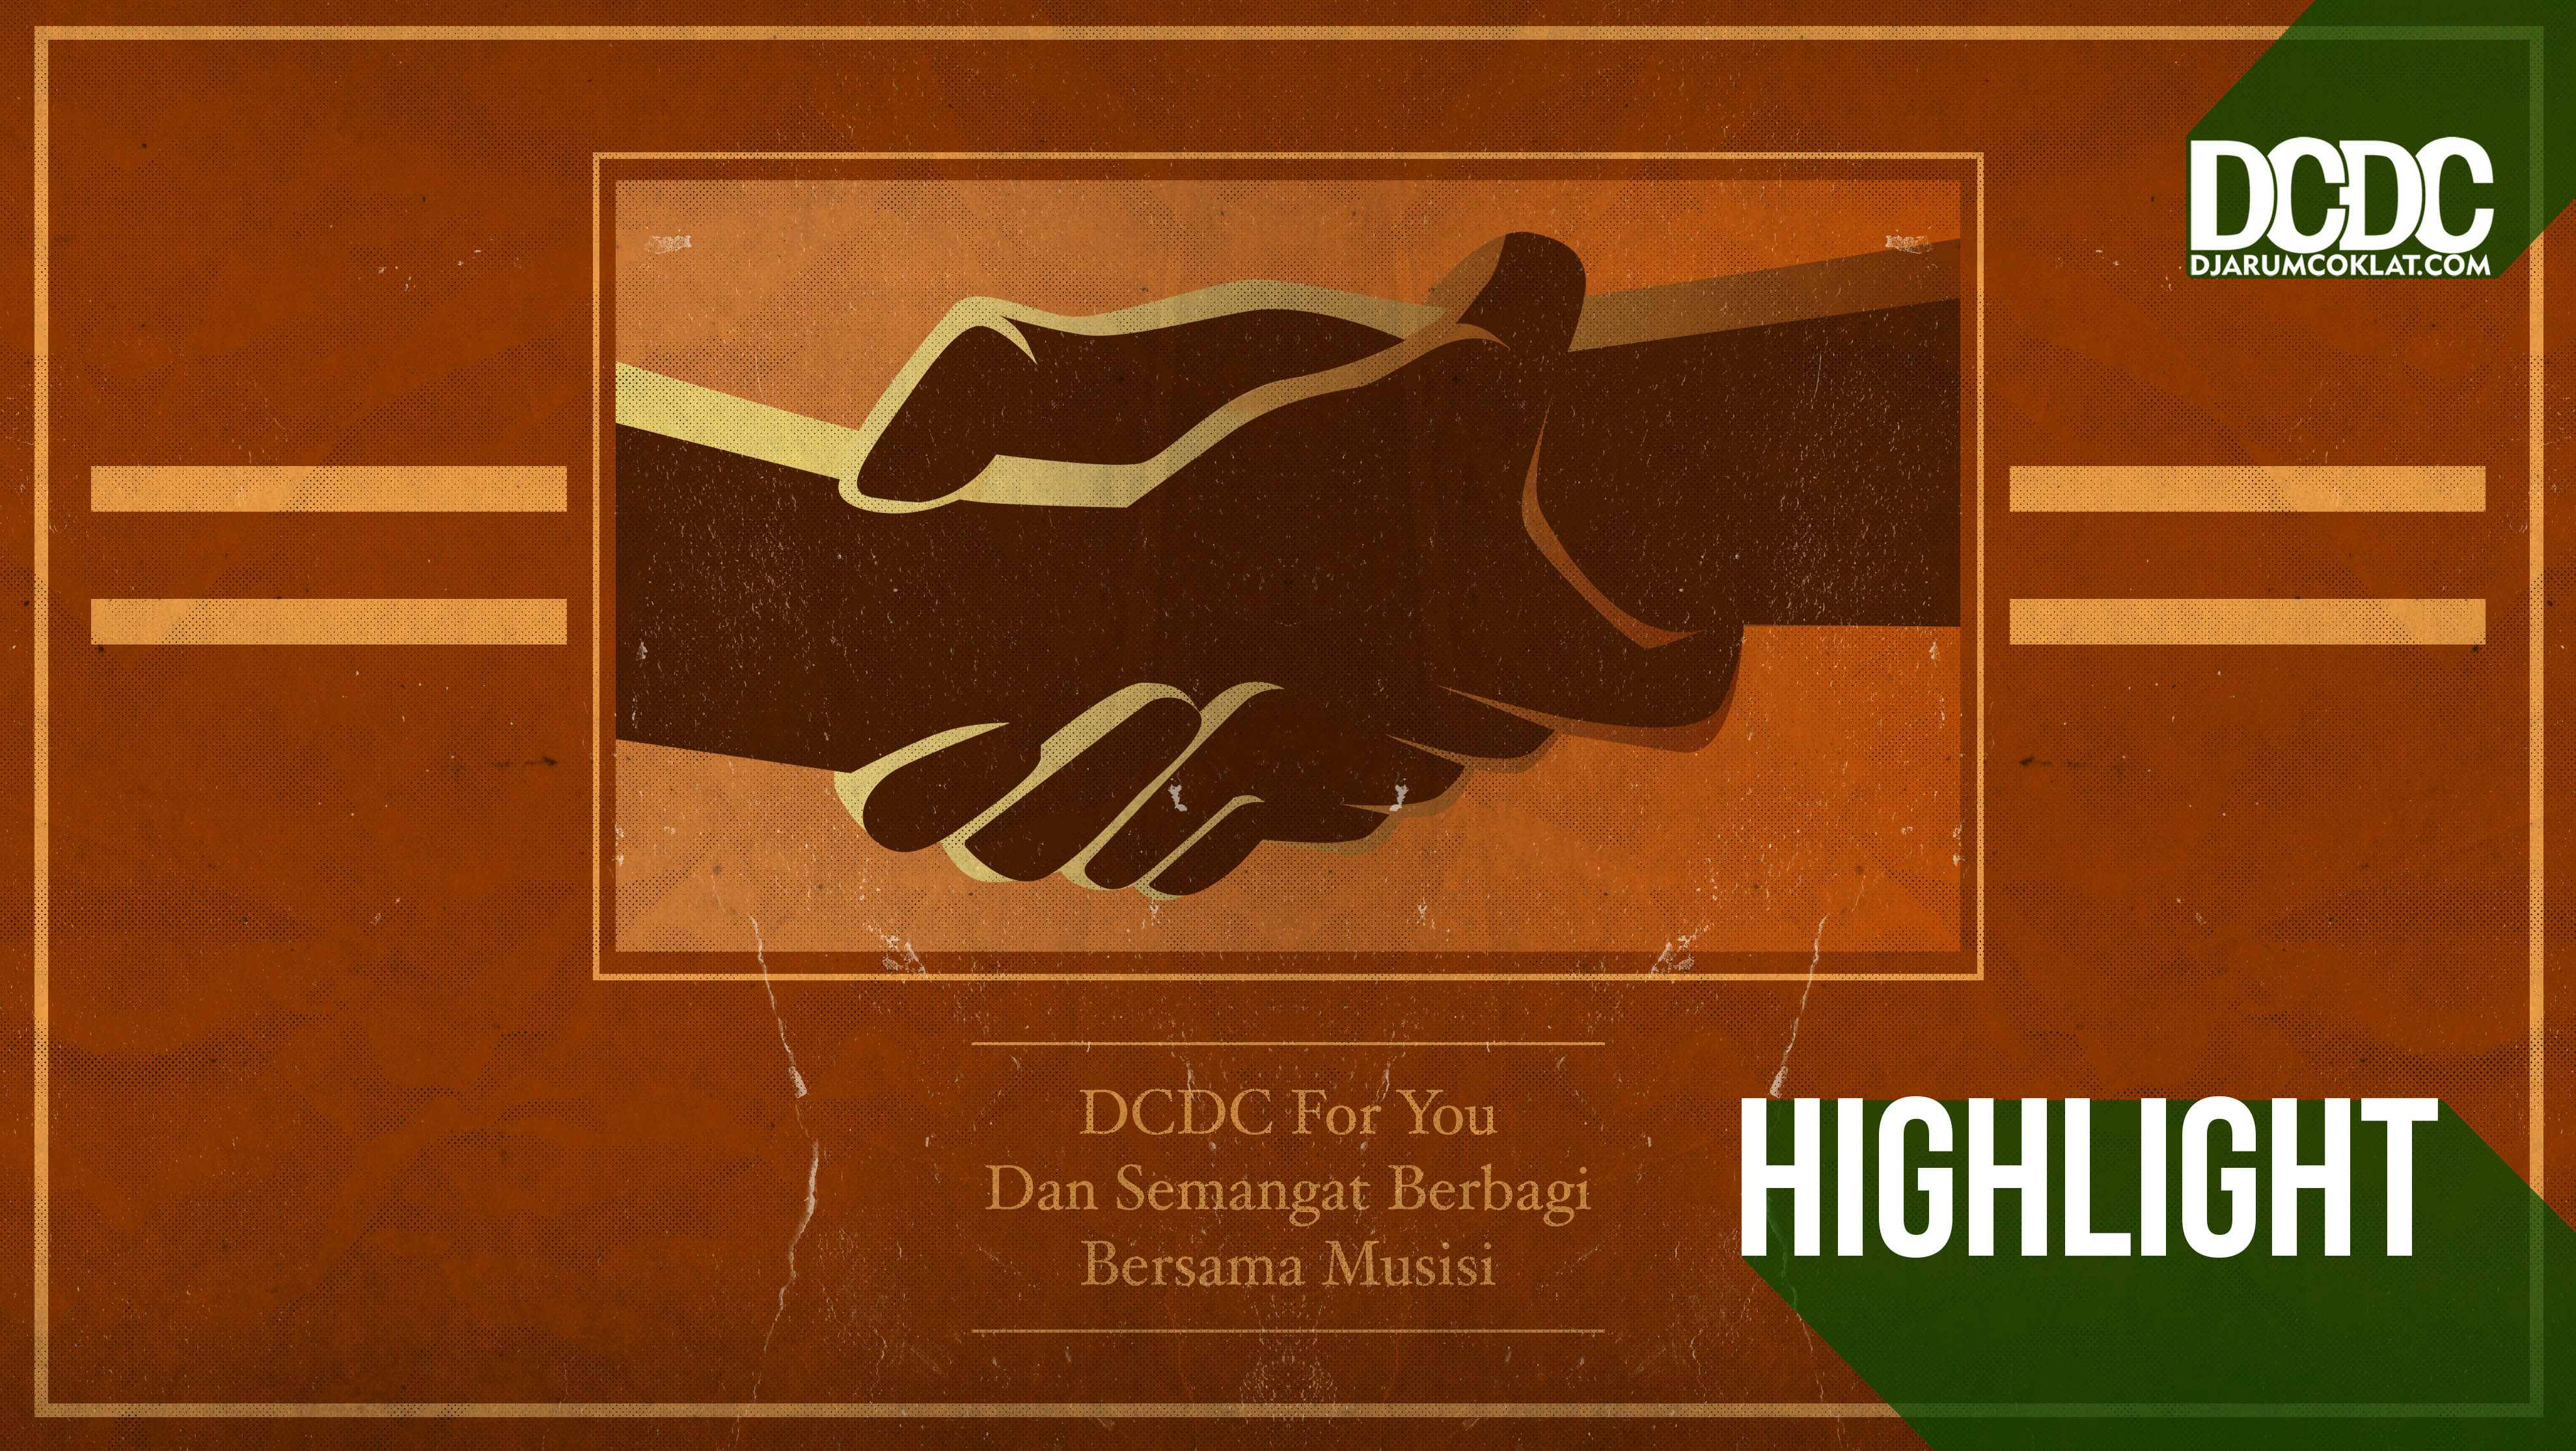 DCDC For You dan Semangat Berbagi Bersama Musisi